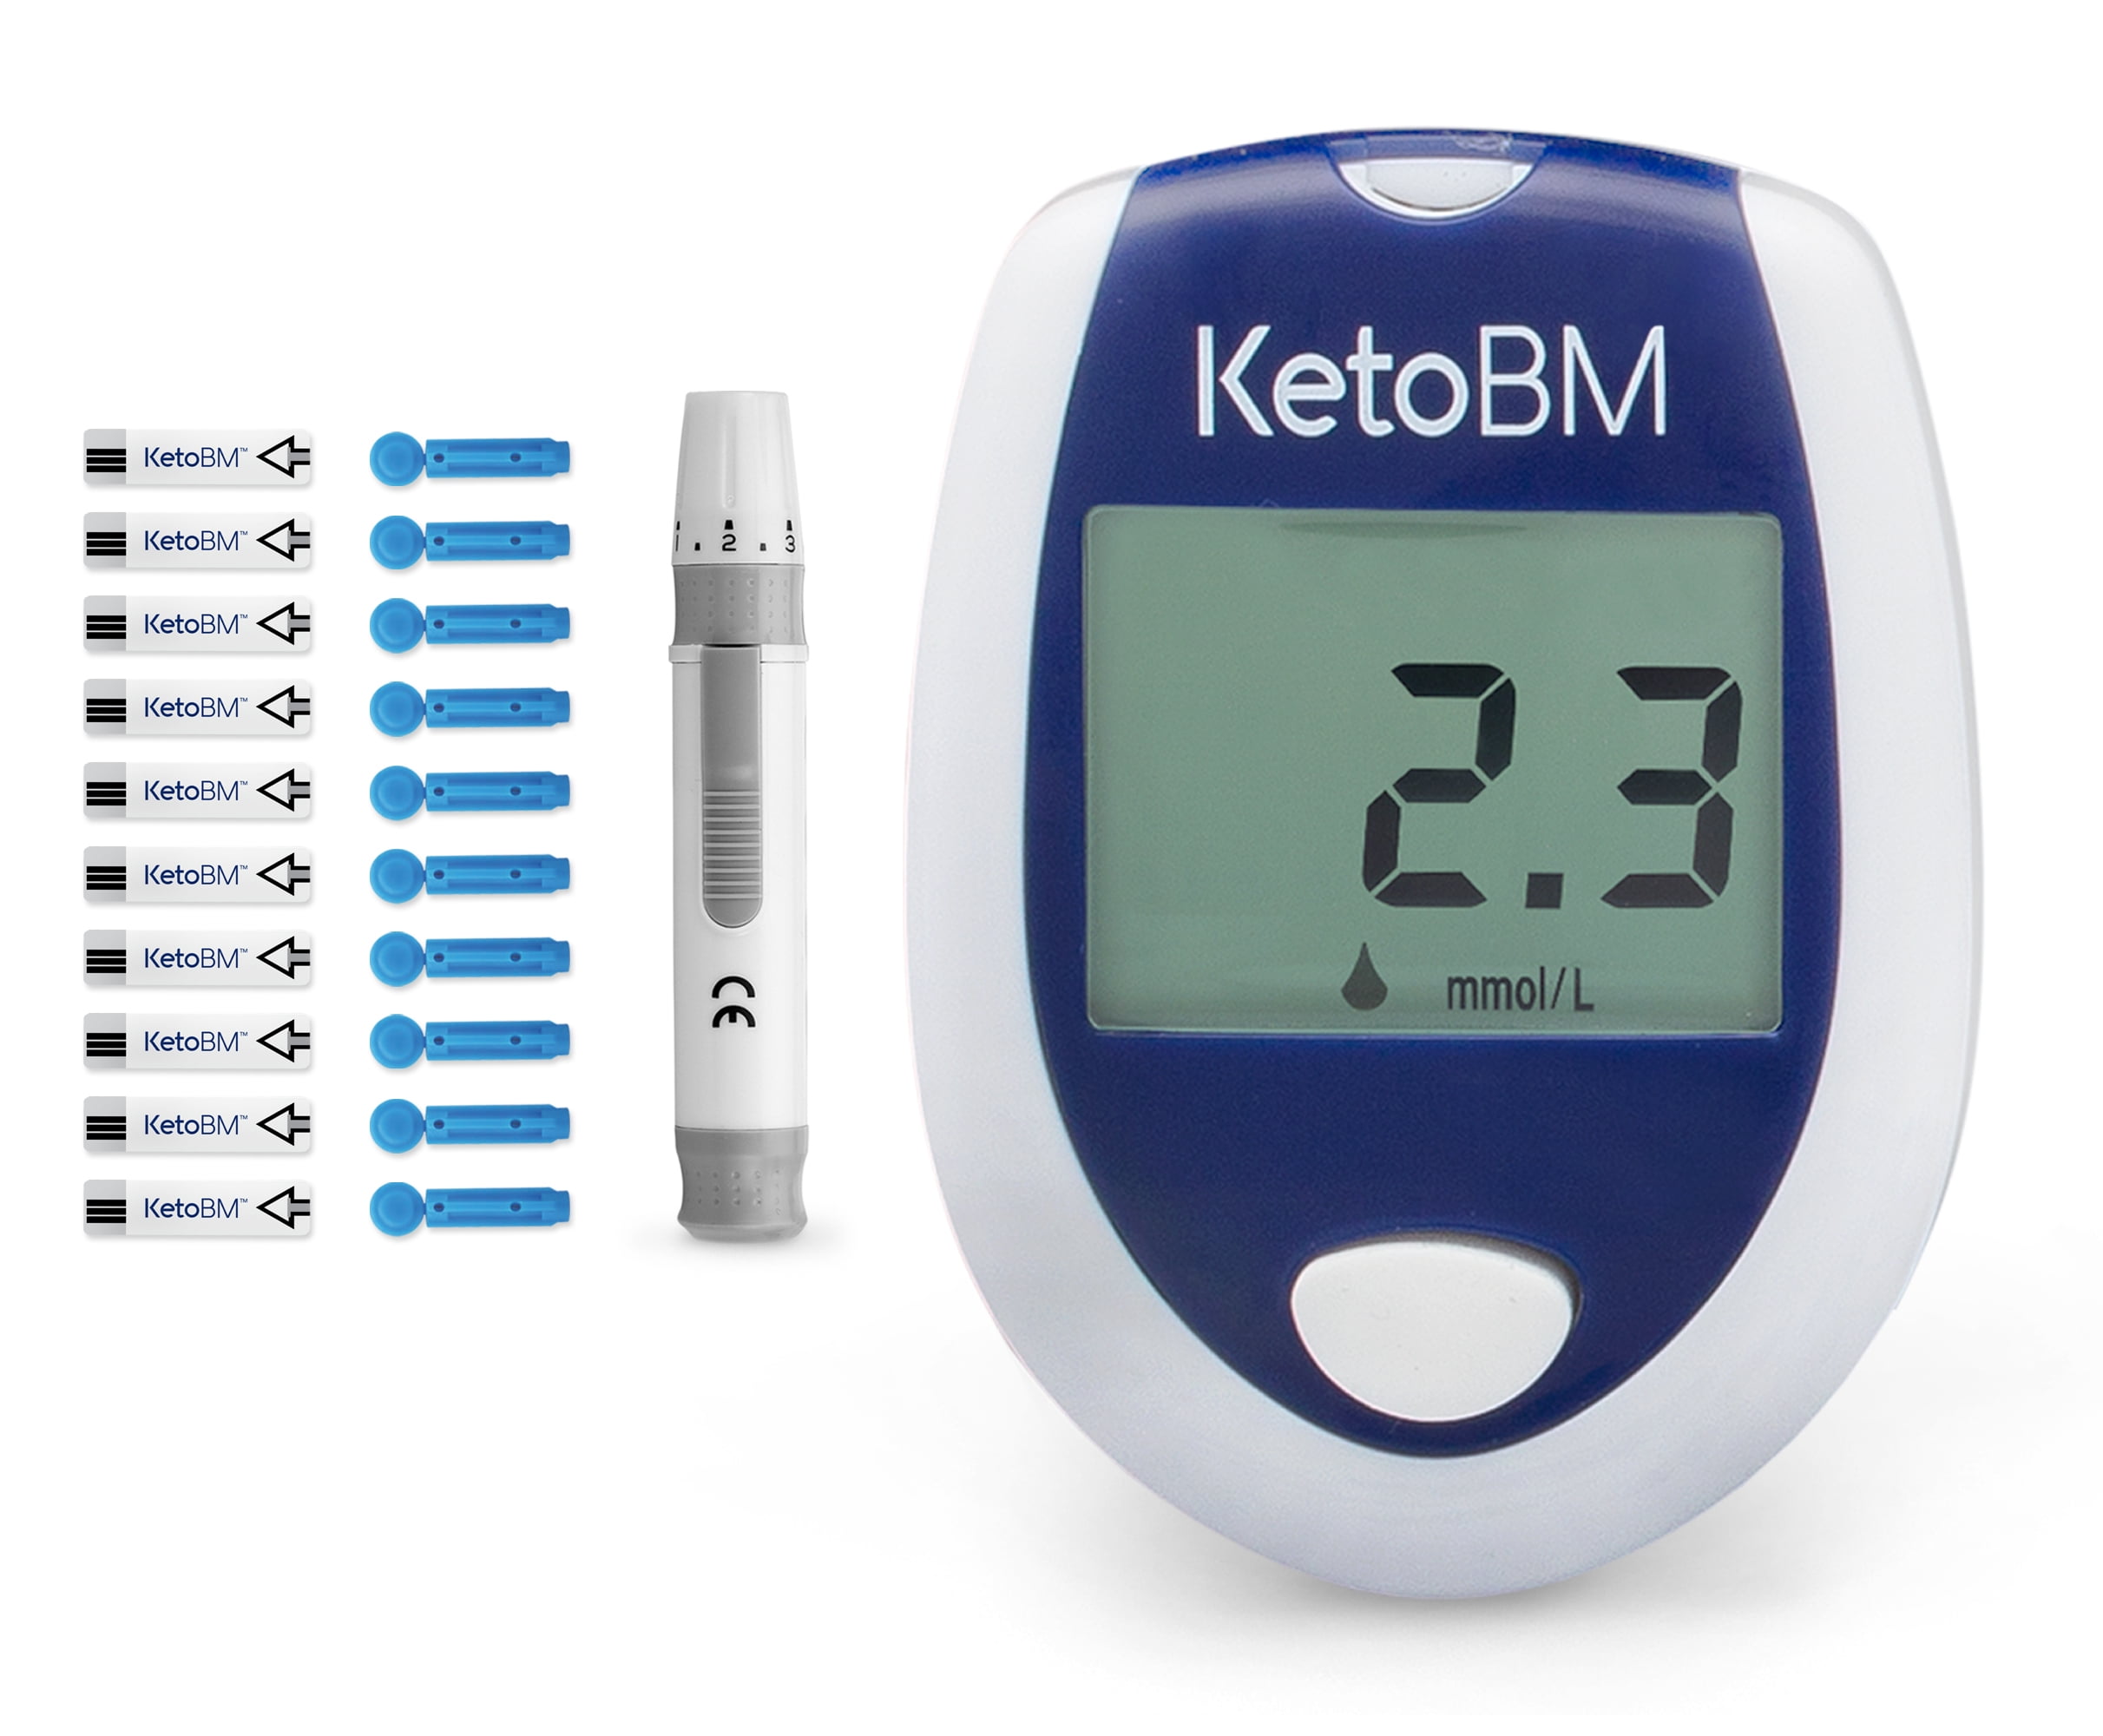 Accugence - Blood Ketone Meter Starter Kit with 30 x beta-Ketone